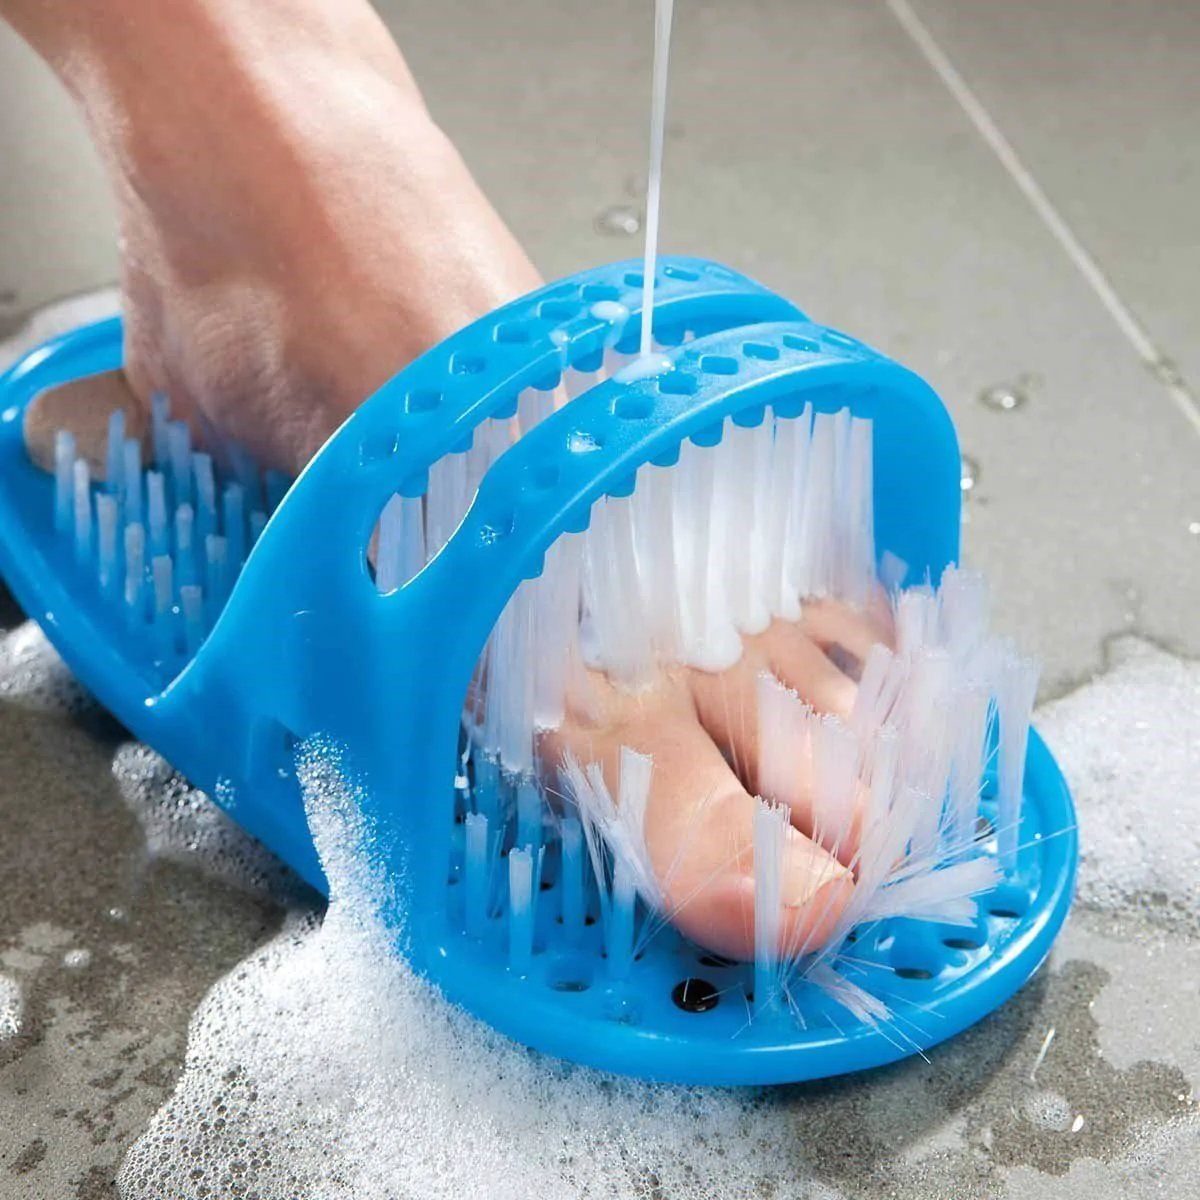 Rücken reinigungs bürste Bad Werkzeug Fuß massage Pad Dusch